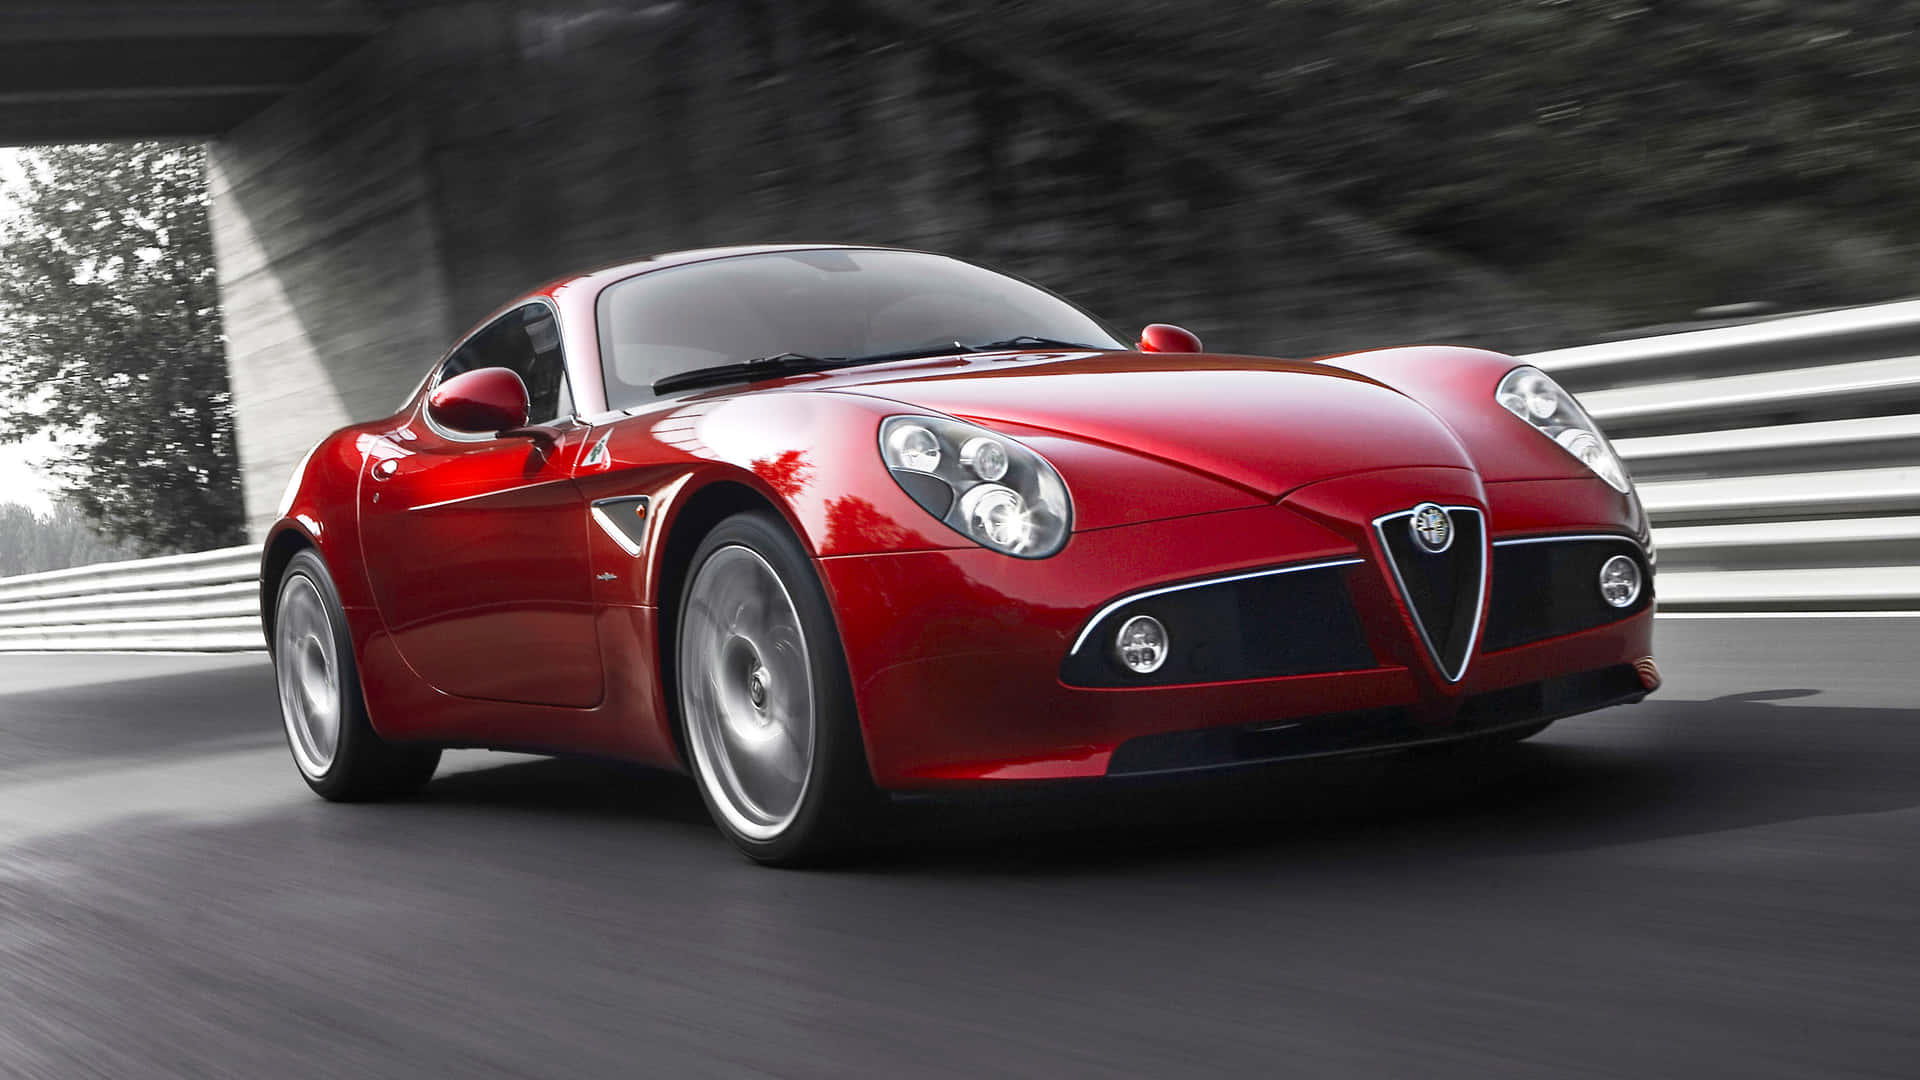 Vonder Ersten Zur Schnellsten: Der Rennbereite Alfa Romeo